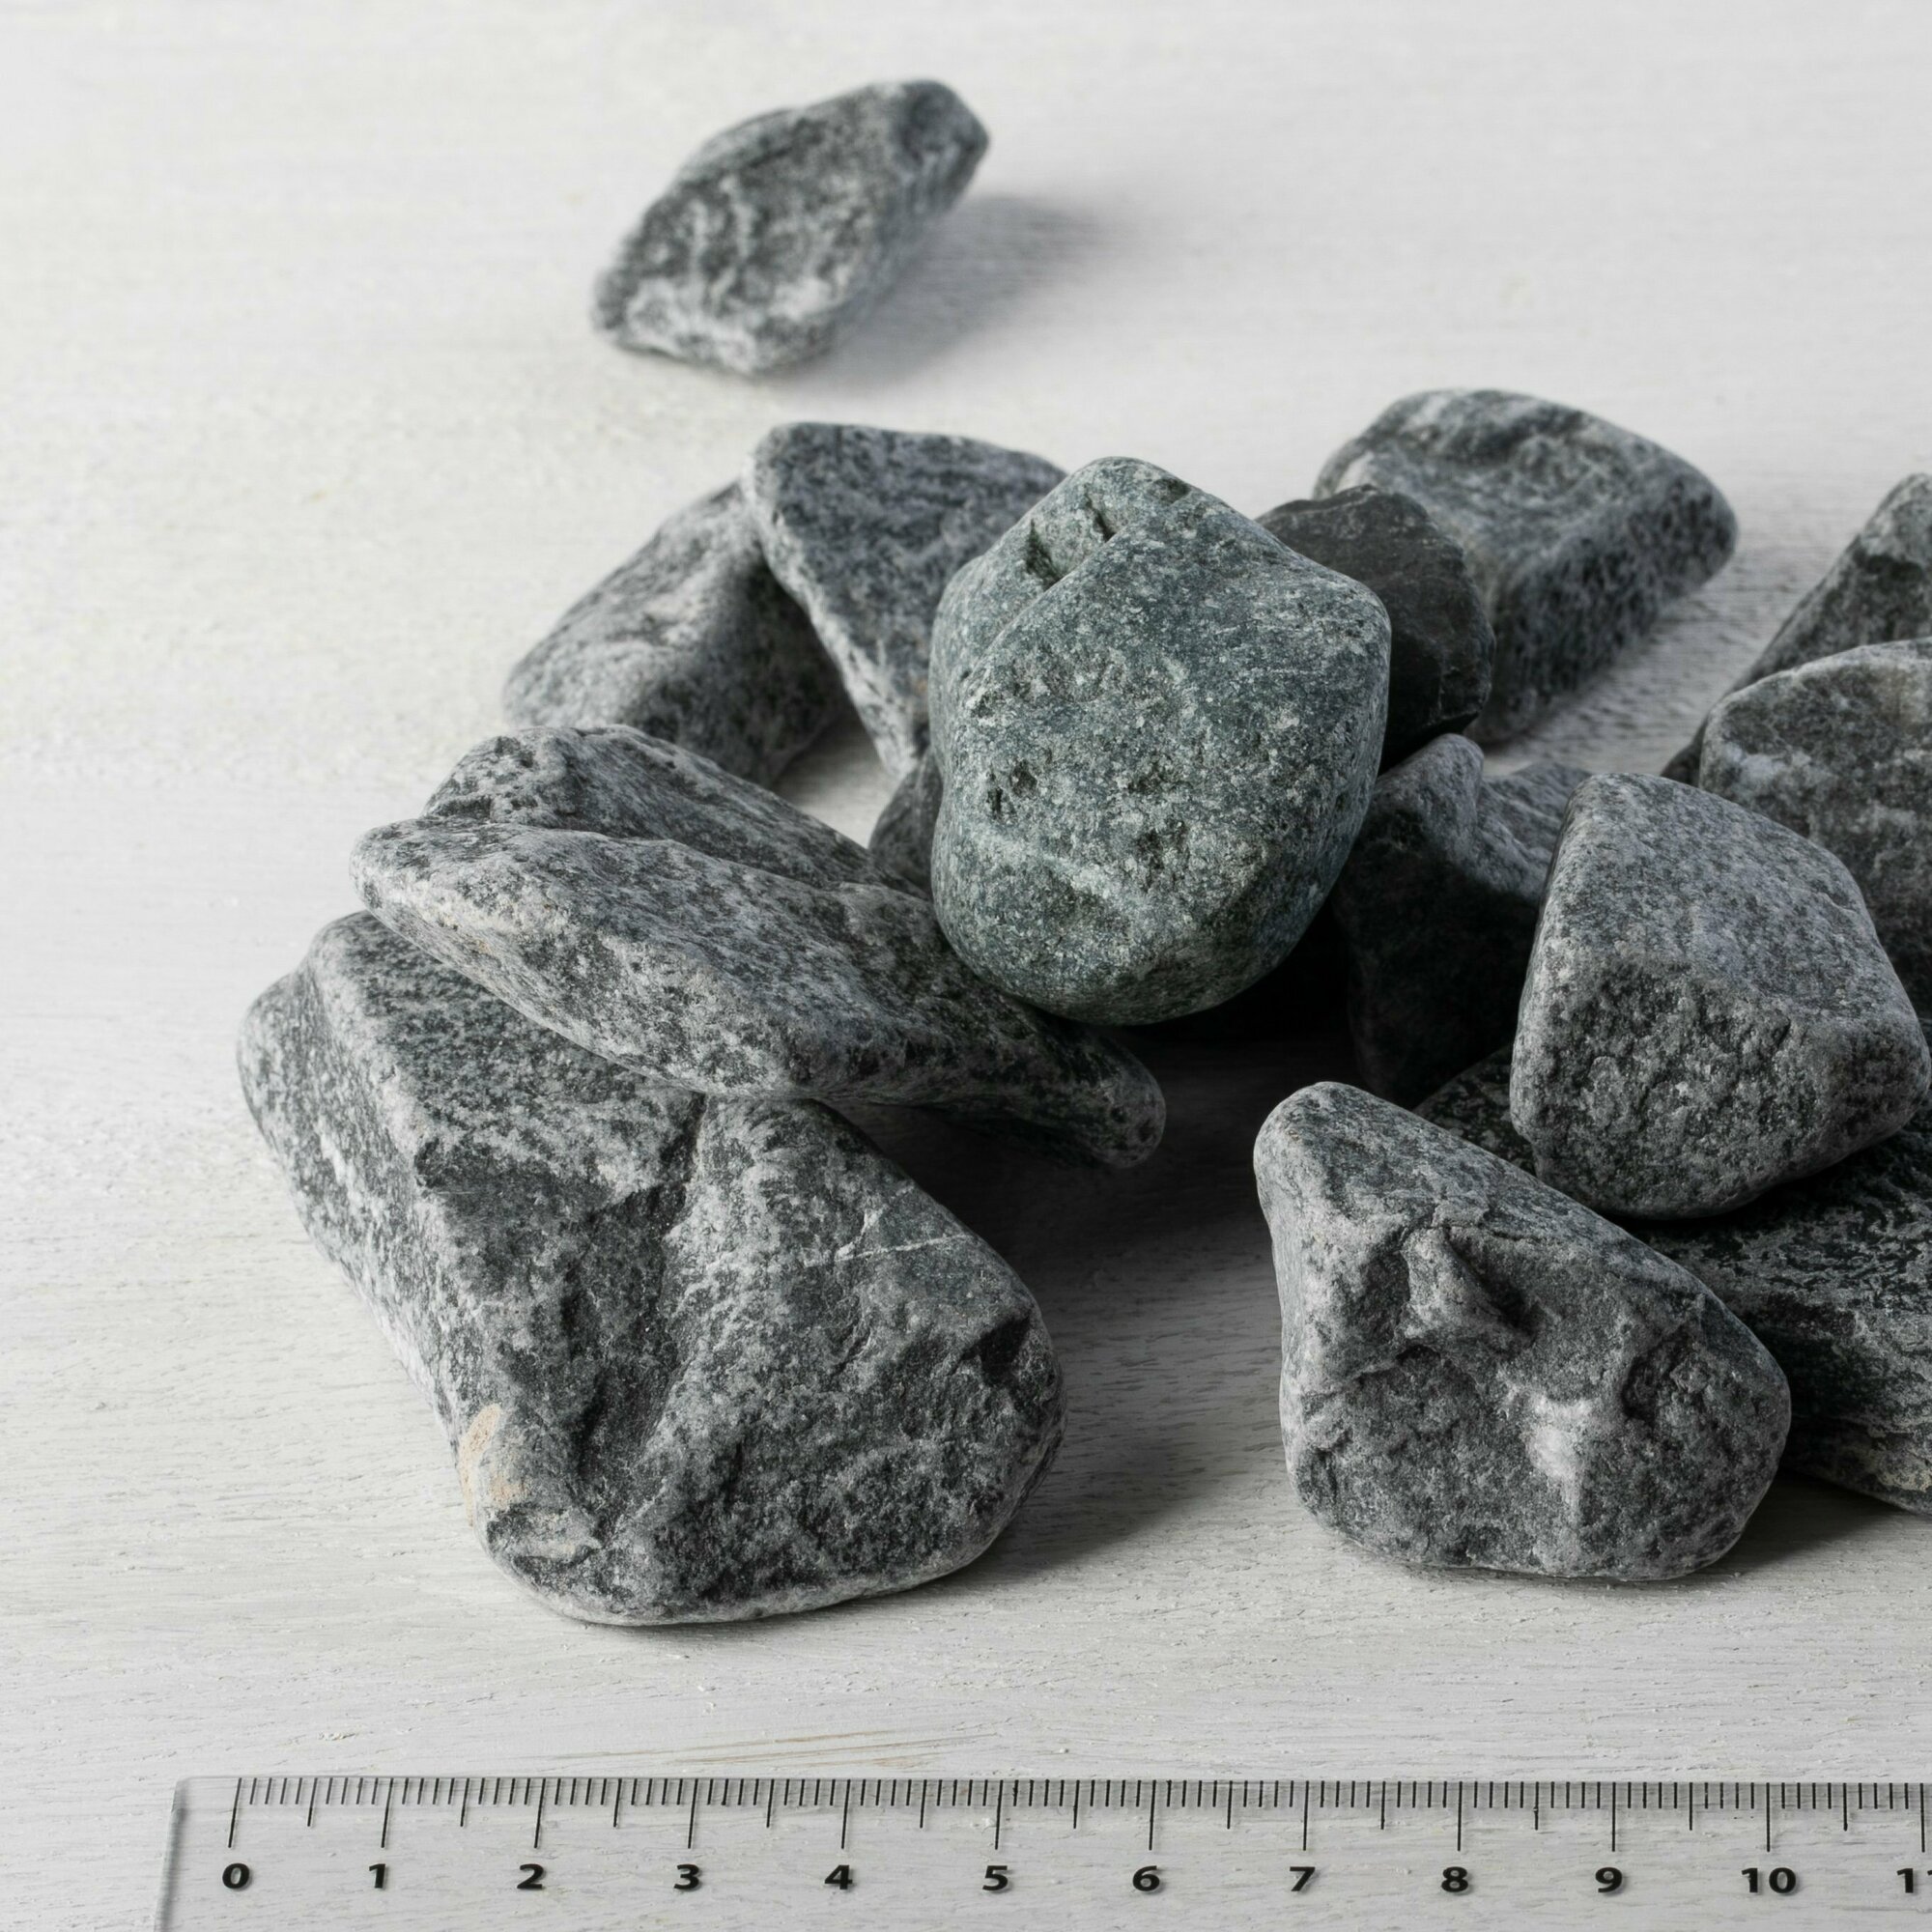 Камень ландшафтный мрамор черный Доломит фракция 20-40 мм 5 кг (319). Декоративный грунт натуральный камень